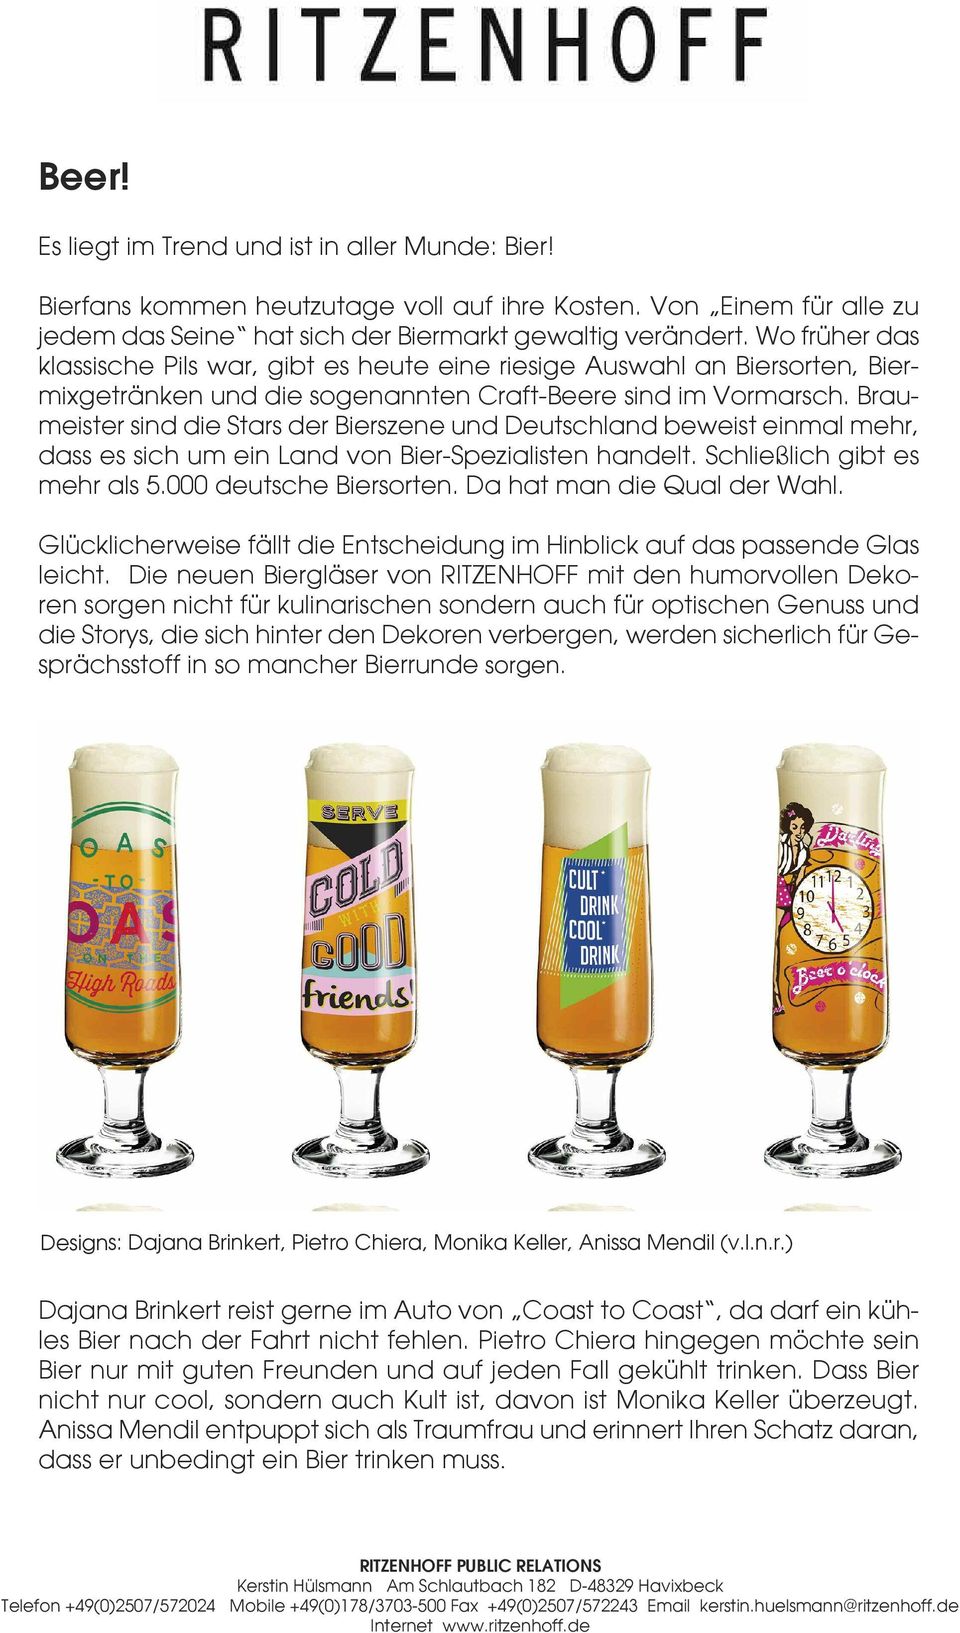 Braumeister sind die Stars der Bierszene und Deutschland beweist einmal mehr, dass es sich um ein Land von Bier-Spezialisten handelt. Schließlich gibt es mehr als 5.000 deutsche Biersorten.